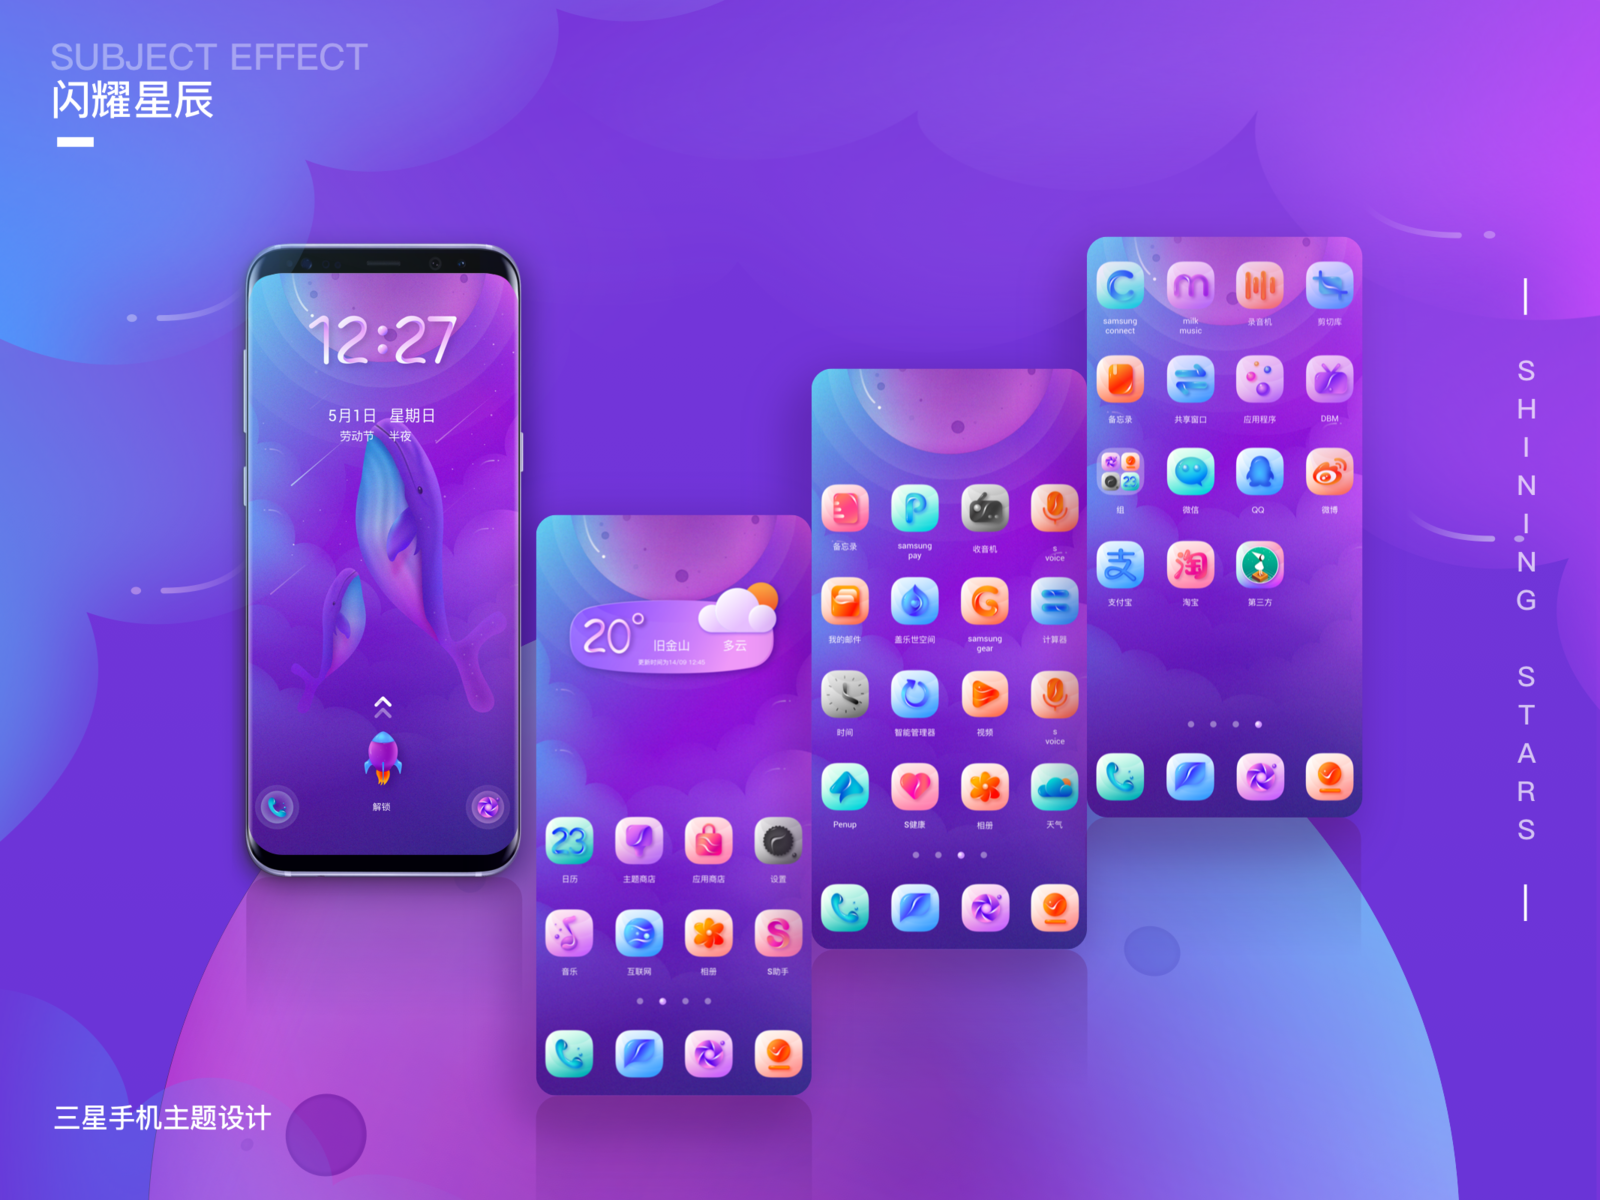 三星手机主题设计Samsung mobile phone theme design by chendafa for AGT on Dribbble